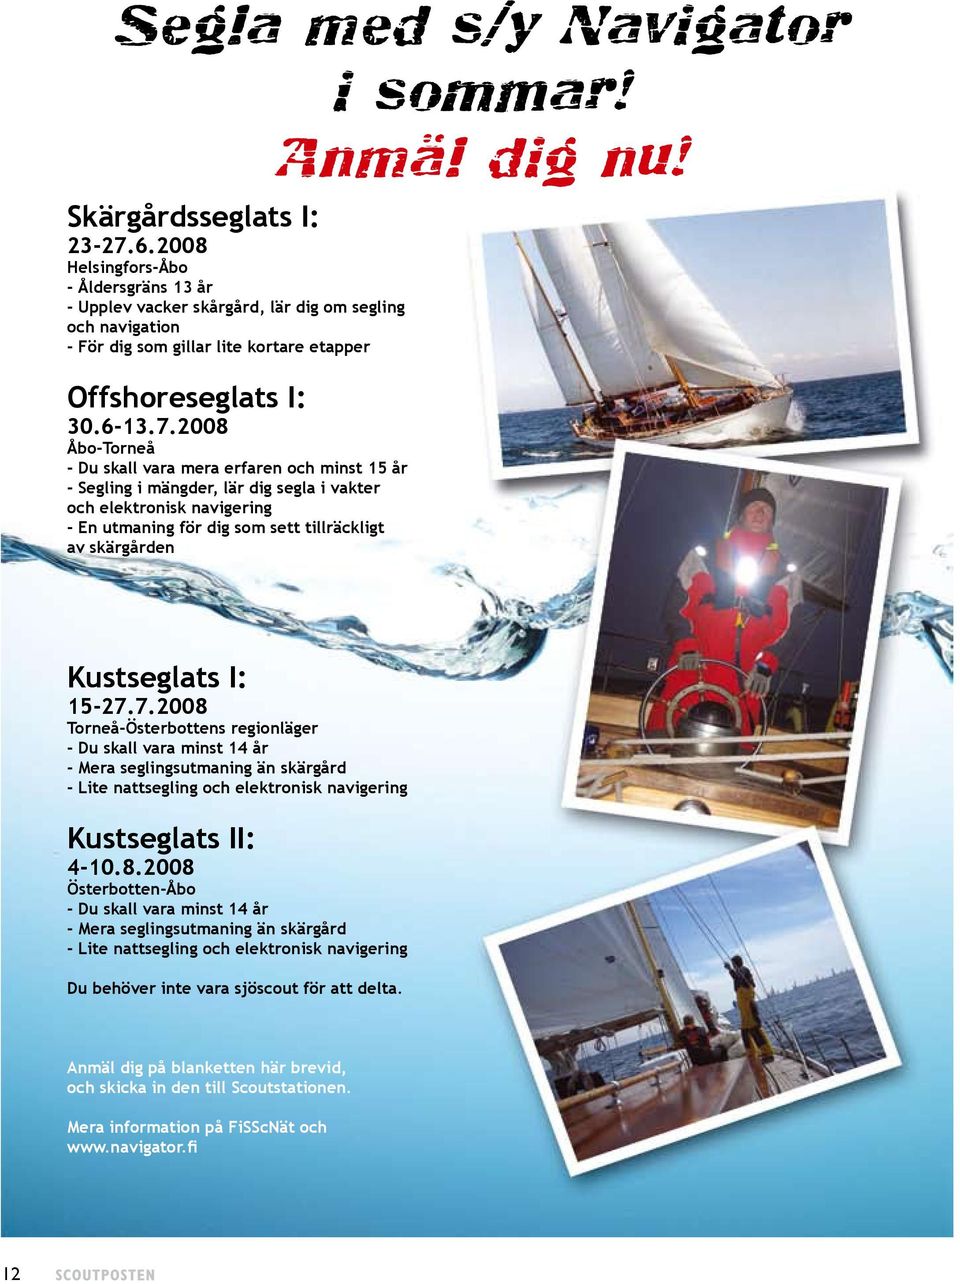 2008 Åbo-Torneå - Du skall vara mera erfaren och minst 15 år - Segling i mängder, lär dig segla i vakter och elektronisk navigering - En utmaning för dig som sett tillräckligt av skärgården